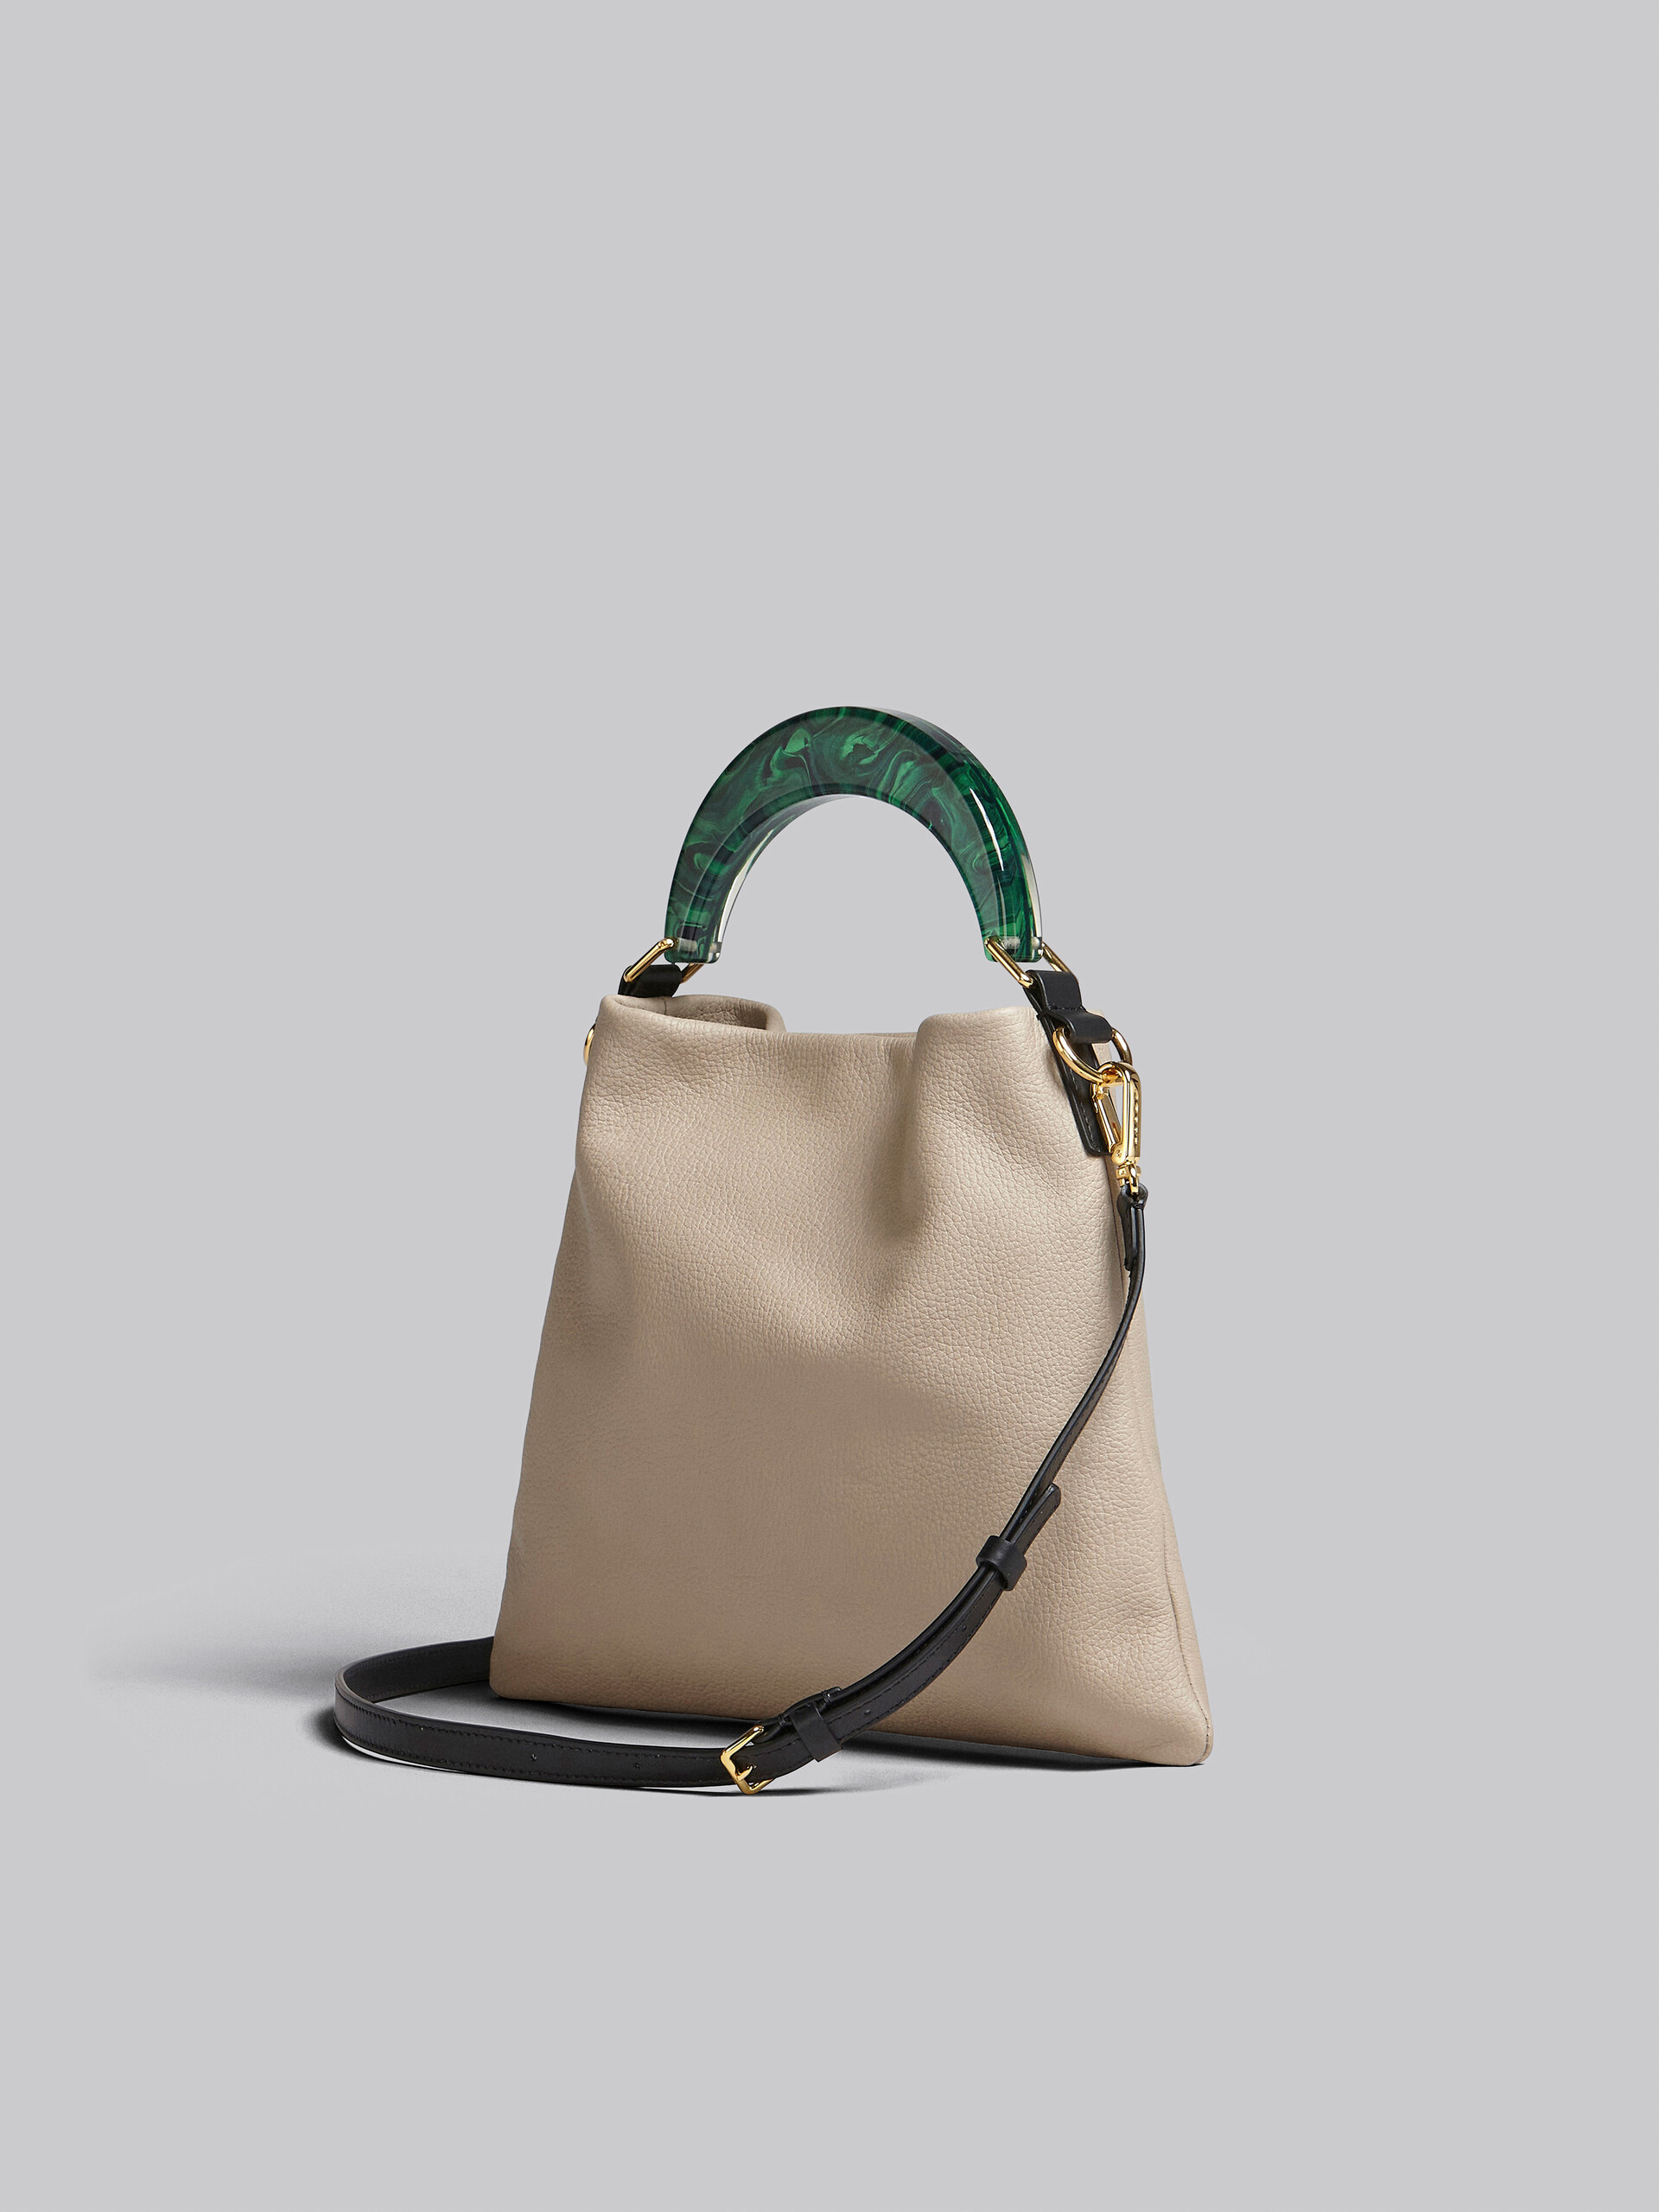 Venice small bag in beige leather - Shoulder Bag - Image 3